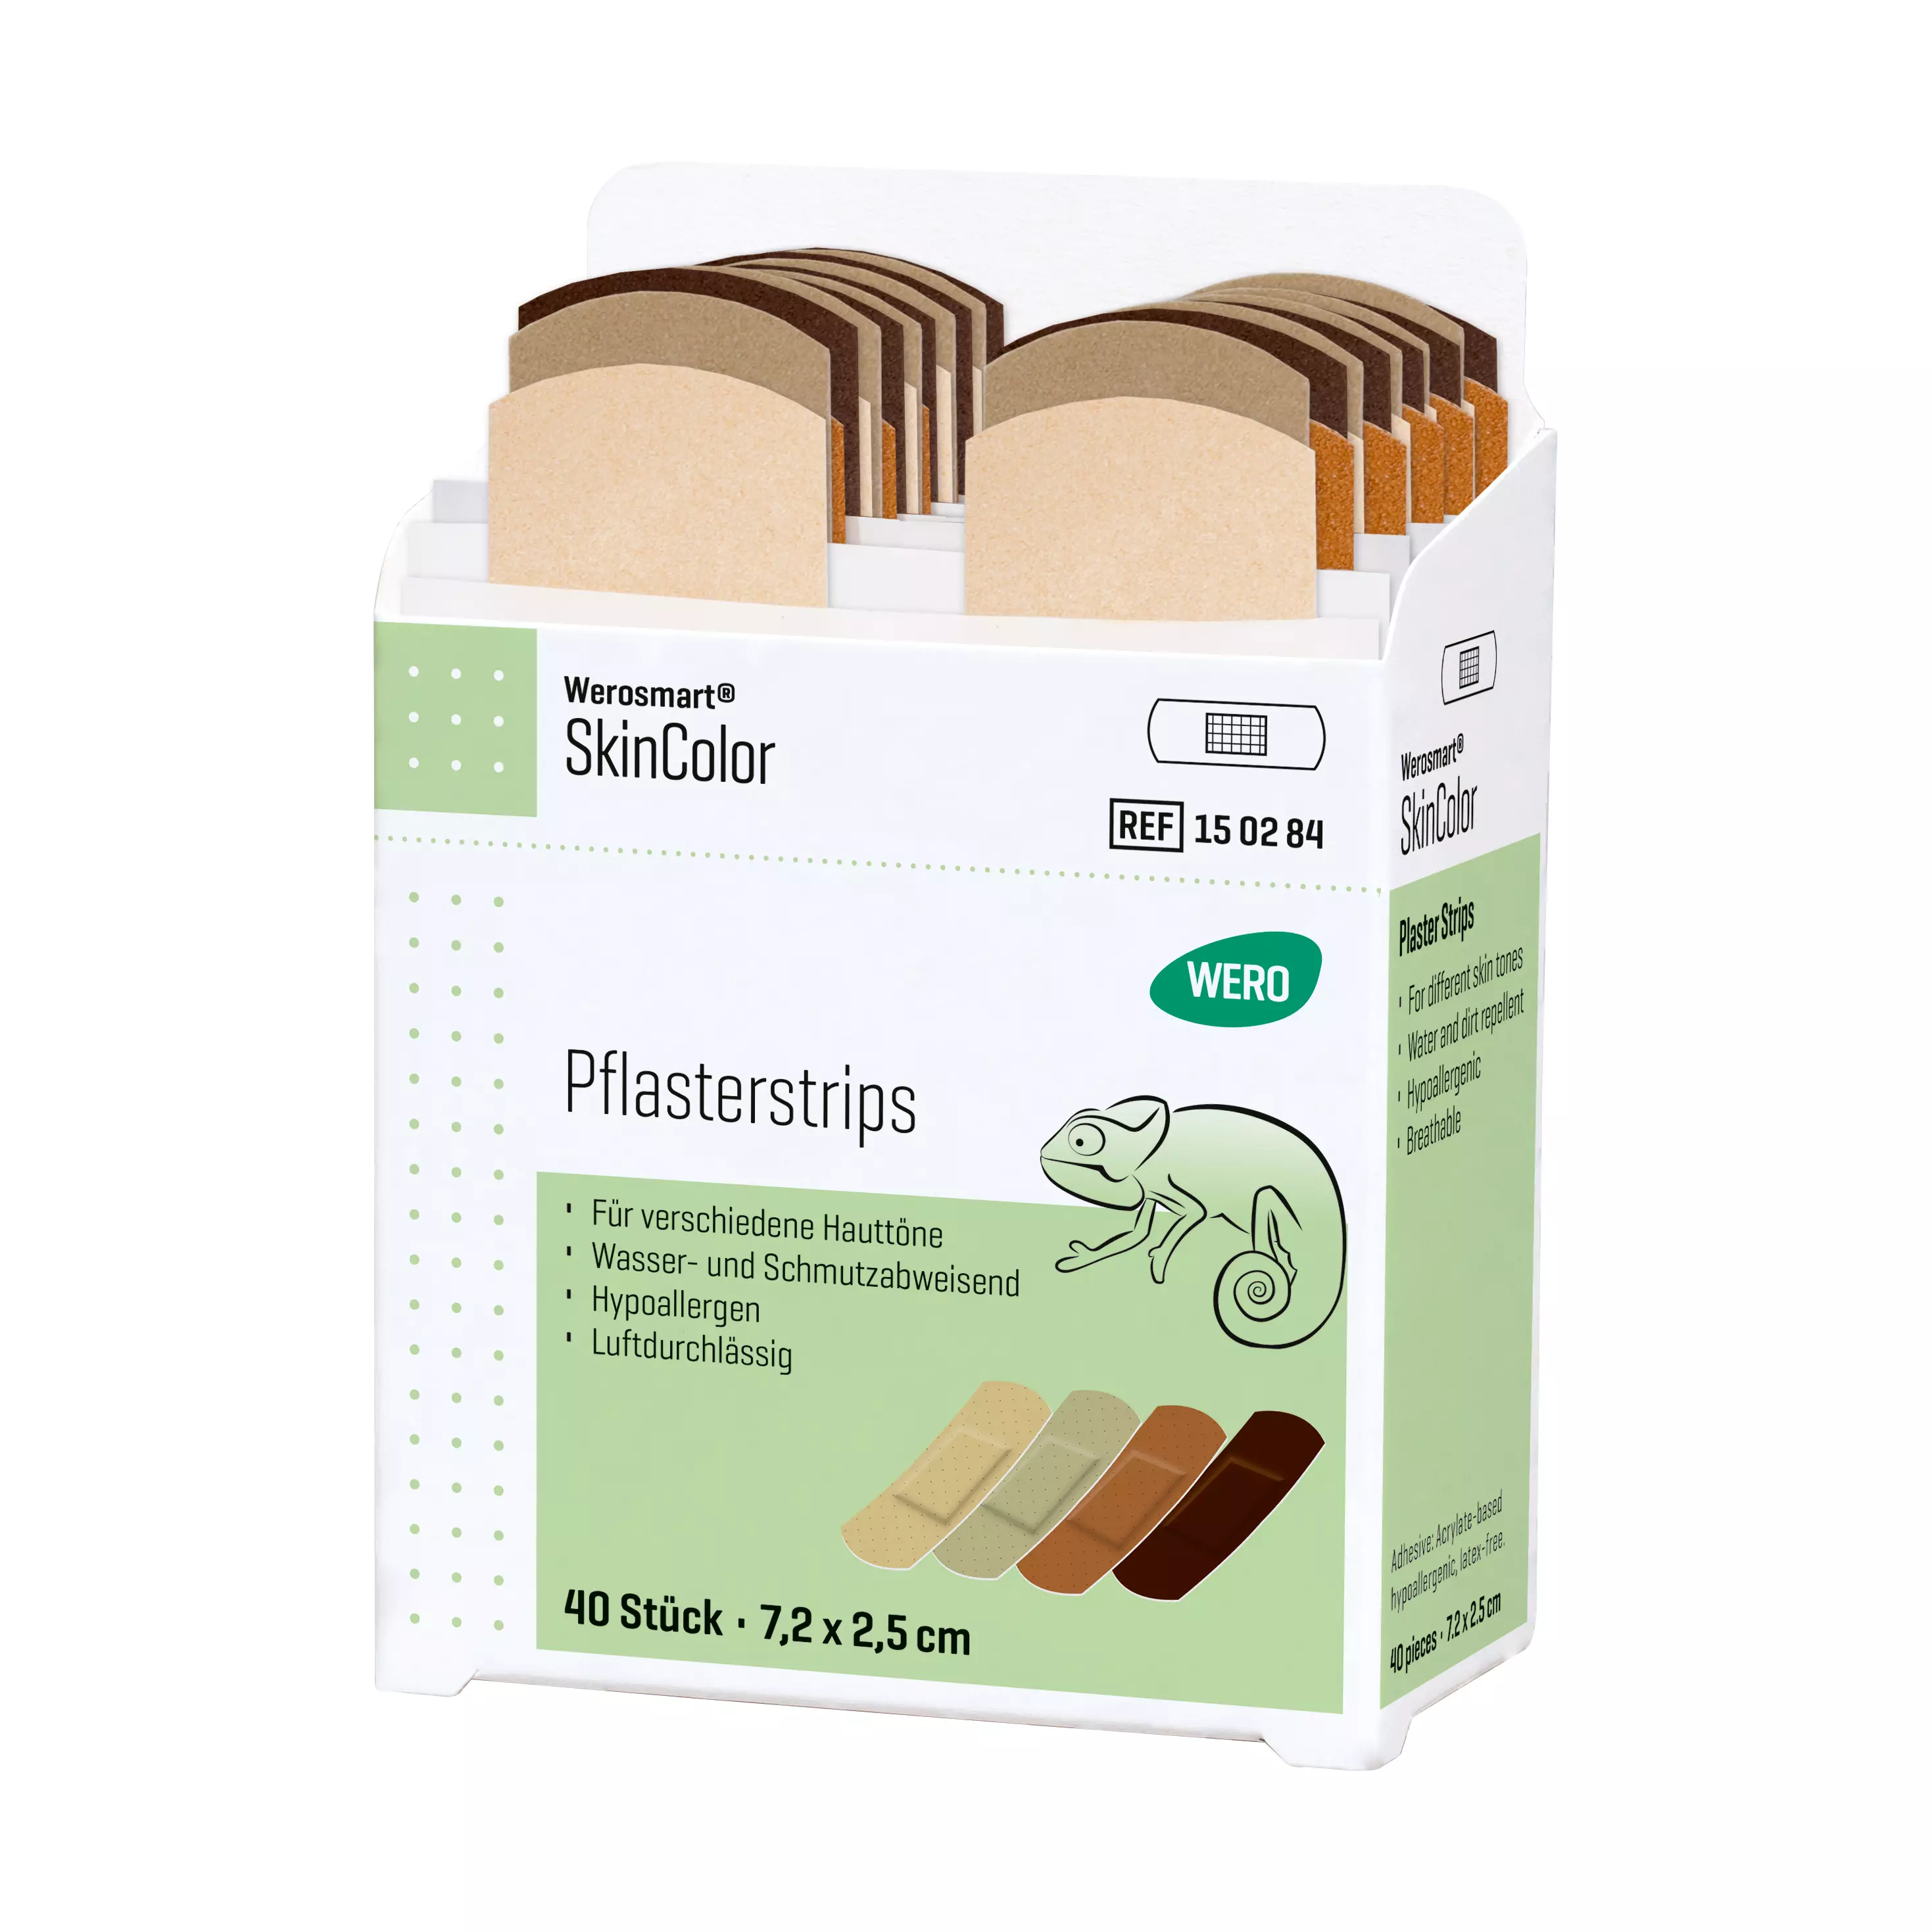 Werosmart® SkinColor plaster dispenser inserts Plaster strips - insert